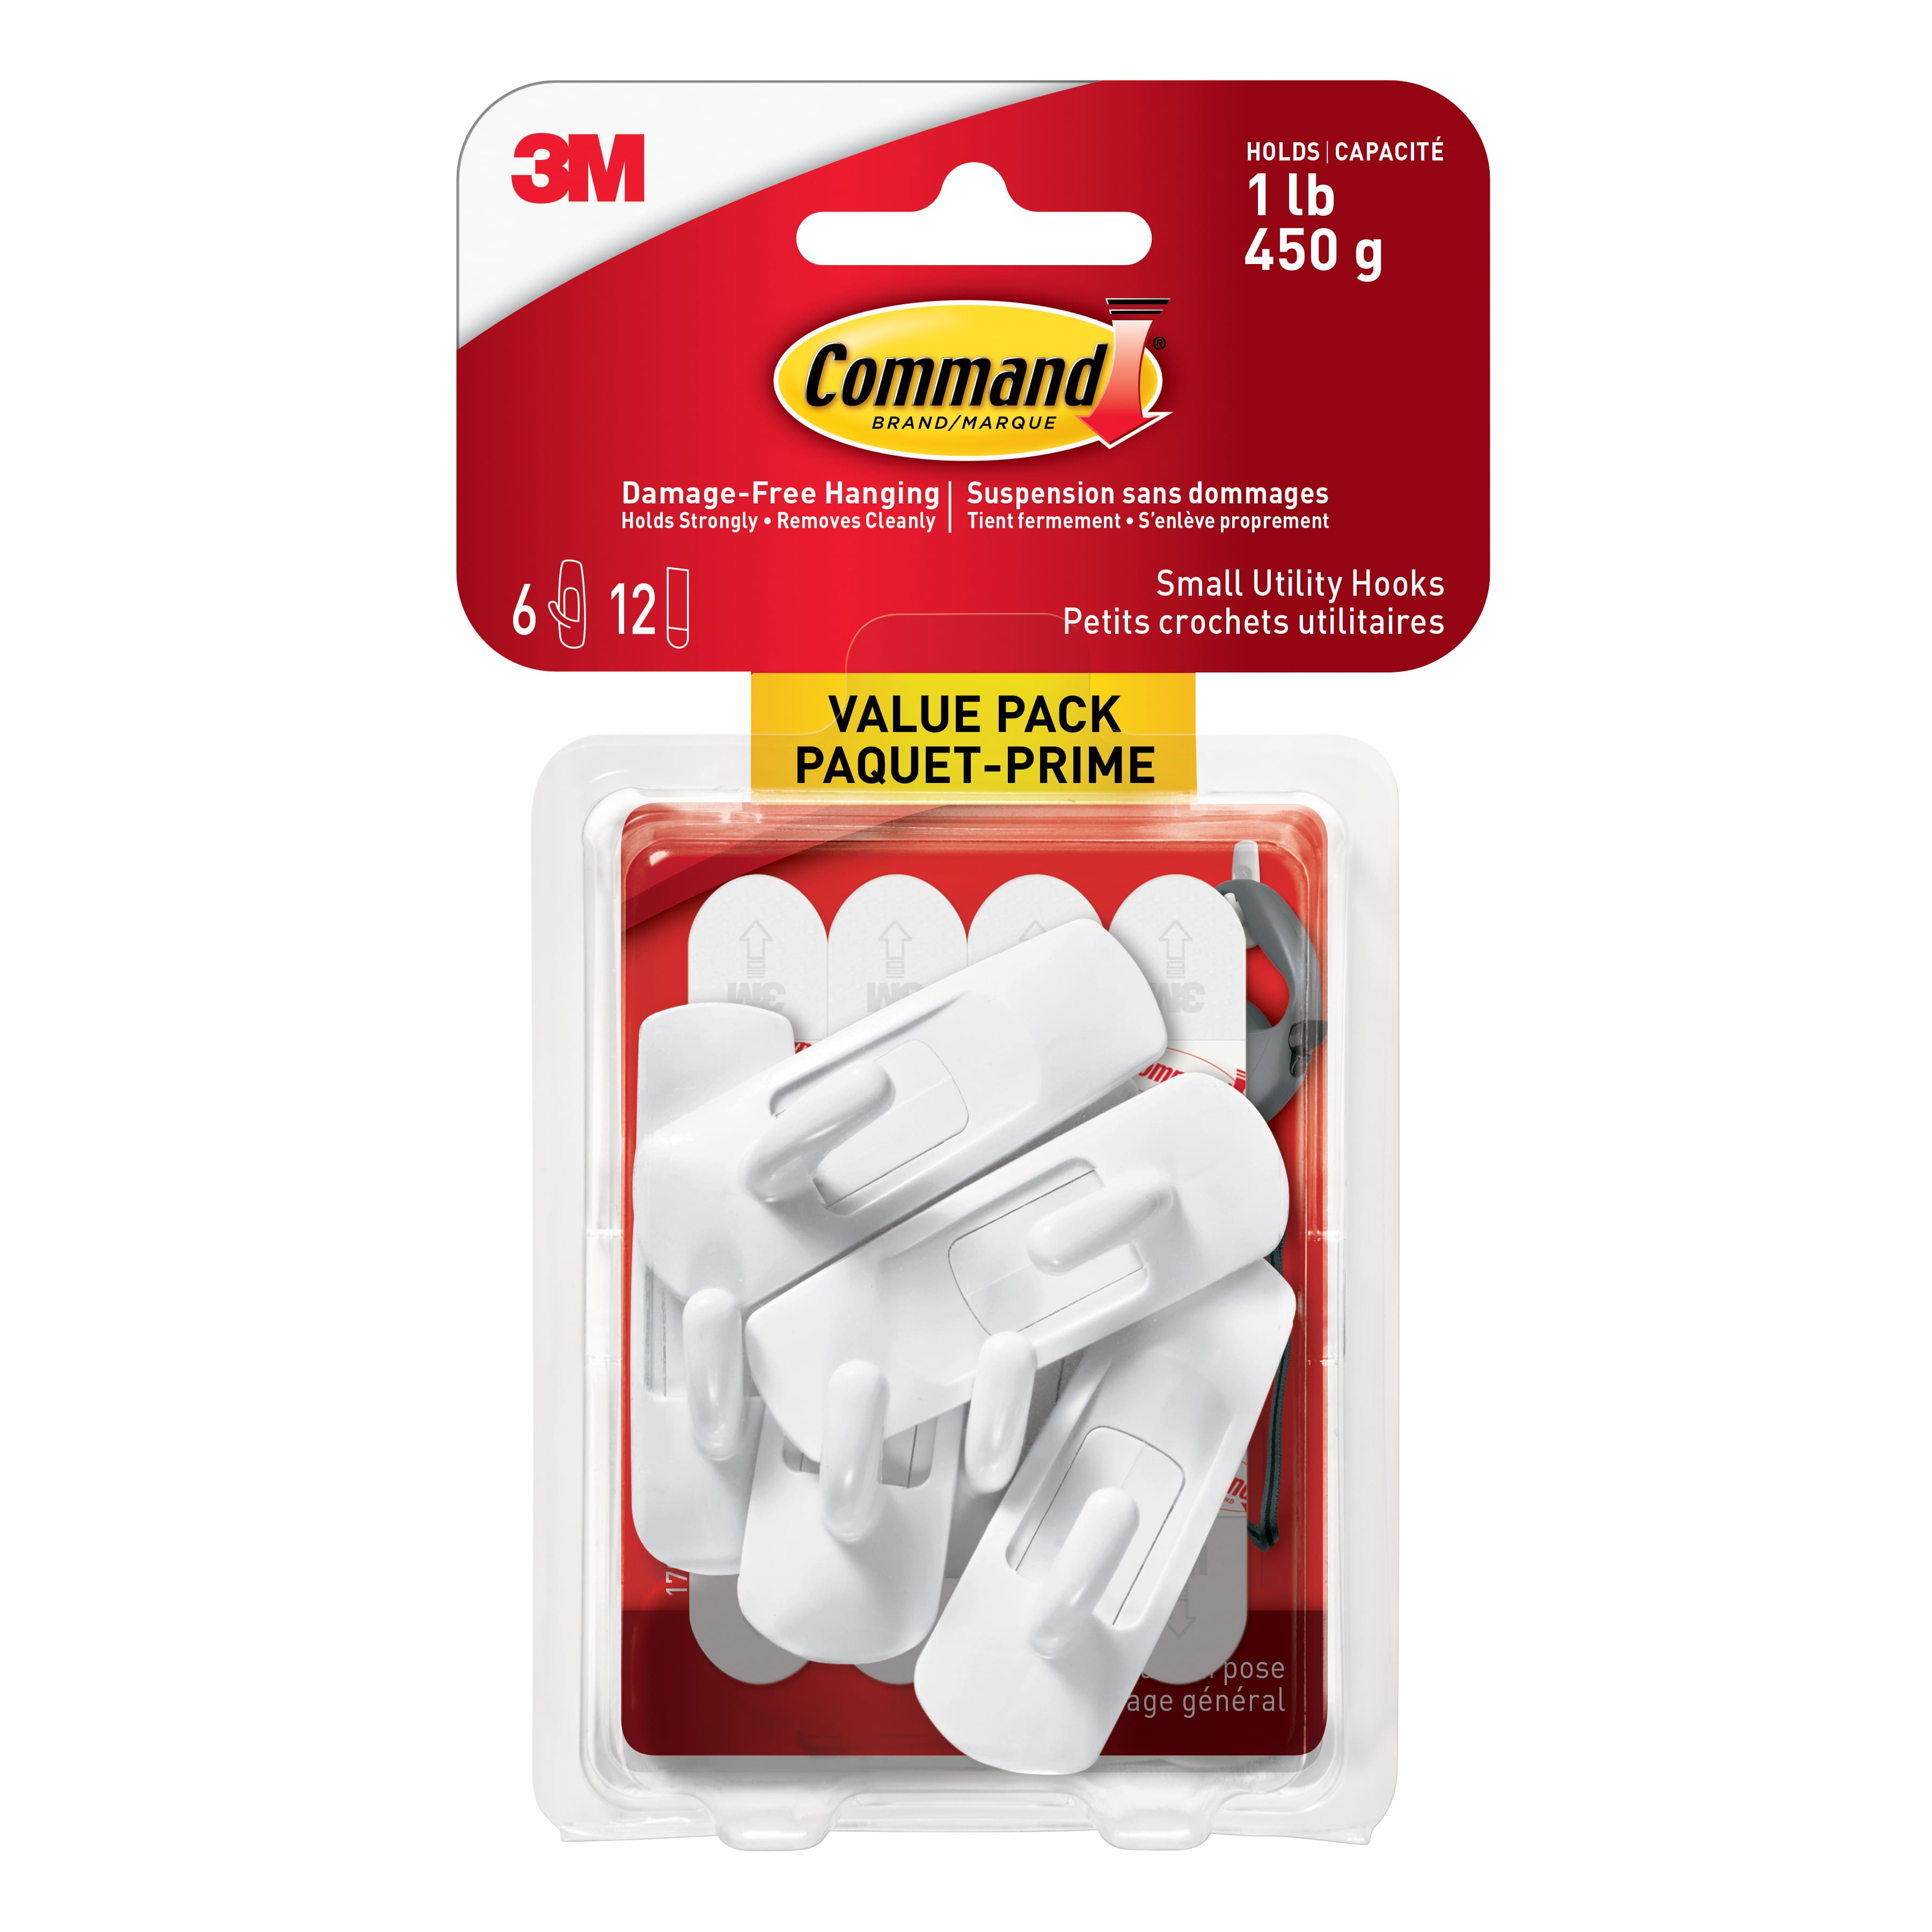 Buy in Bulk - 12 Packs: 6 ct. (72 total) Command™ Small White Utility Hooks